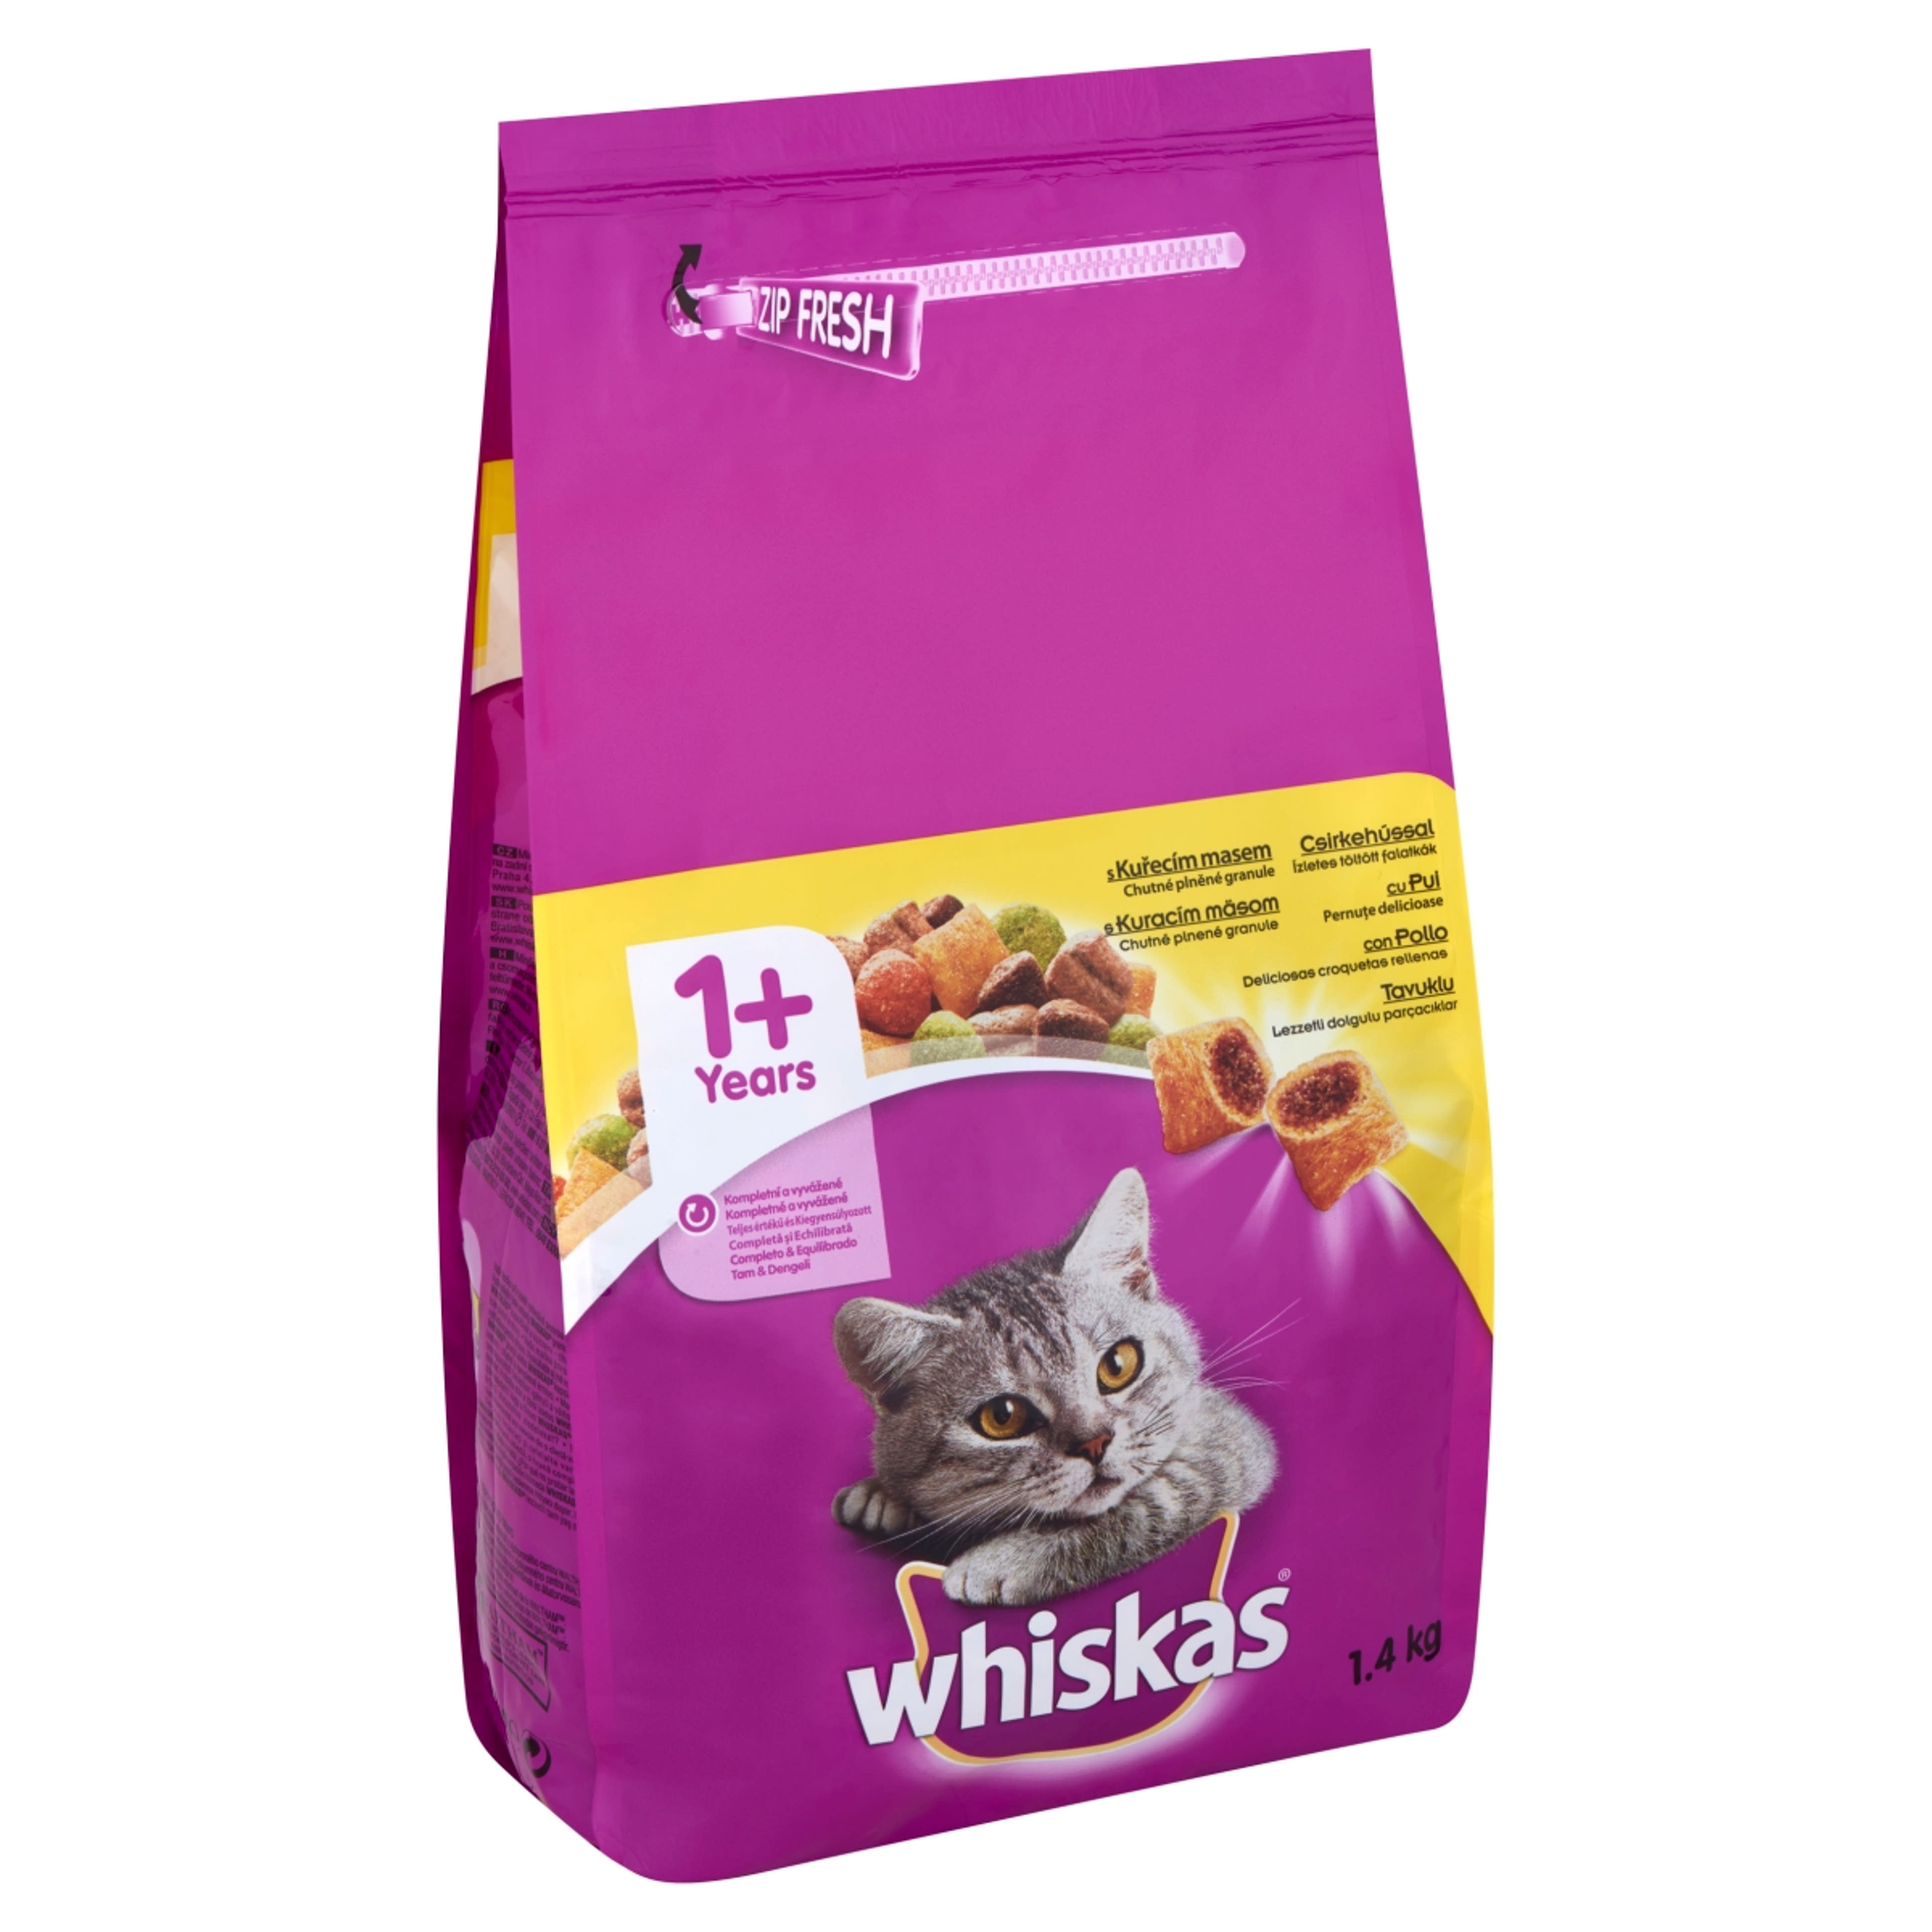 Whiskas szárazeledel csirkével macskáknak - 1,4 kg-2